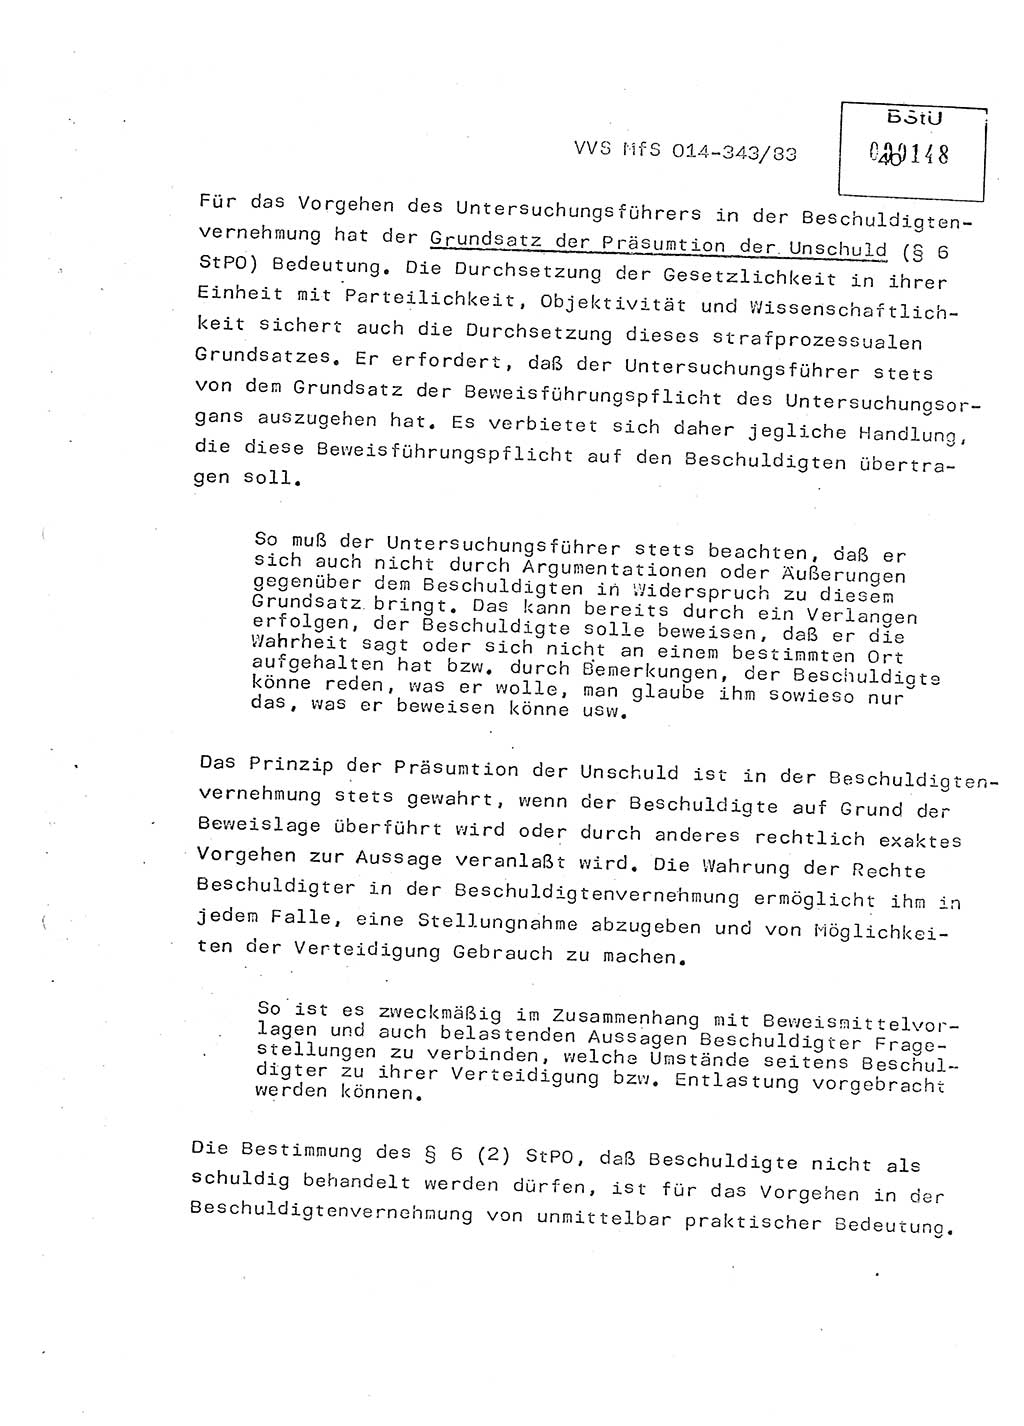 Lektion Ministerium für Staatssicherheit (MfS) [Deutsche Demokratische Republik (DDR)], Hauptabteilung (HA) Ⅸ, Vertrauliche Verschlußsache (VVS) o014-343/83, Berlin 1983, Seite 40 (Lekt. MfS DDR HA Ⅸ VVS o014-343/83 1983, S. 40)